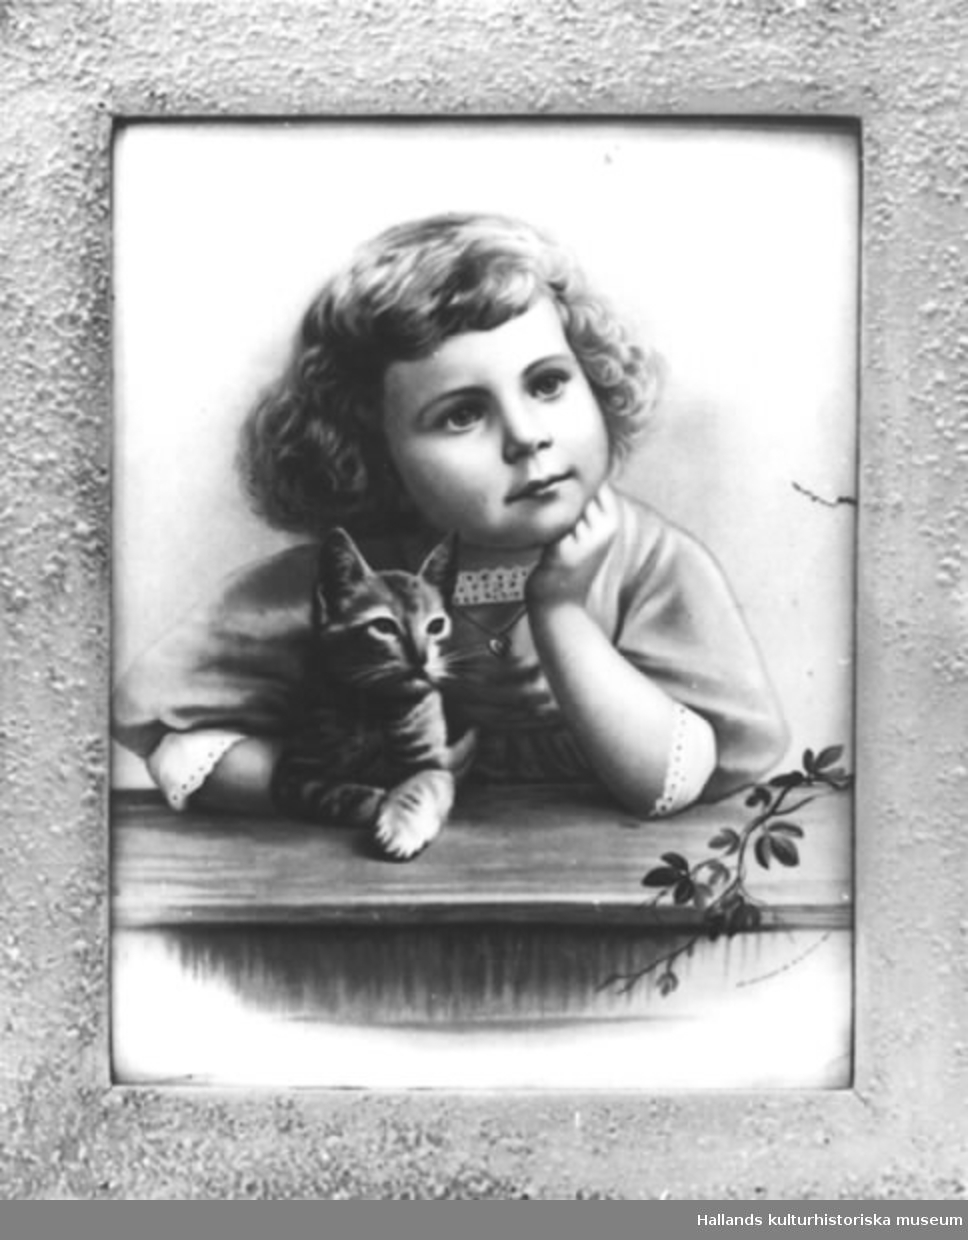 Oljetryck med ram. a) Tryck. Ung drömmande flicka med kattunge. Mått: bredd 30 cm, höjd 40 cm. b) Ram. Mått: bredd 5 cm, grå. Märkning: "FROM PHOTO. COPYRIGHT 189 BY B.J. FALK N.Y.1891".